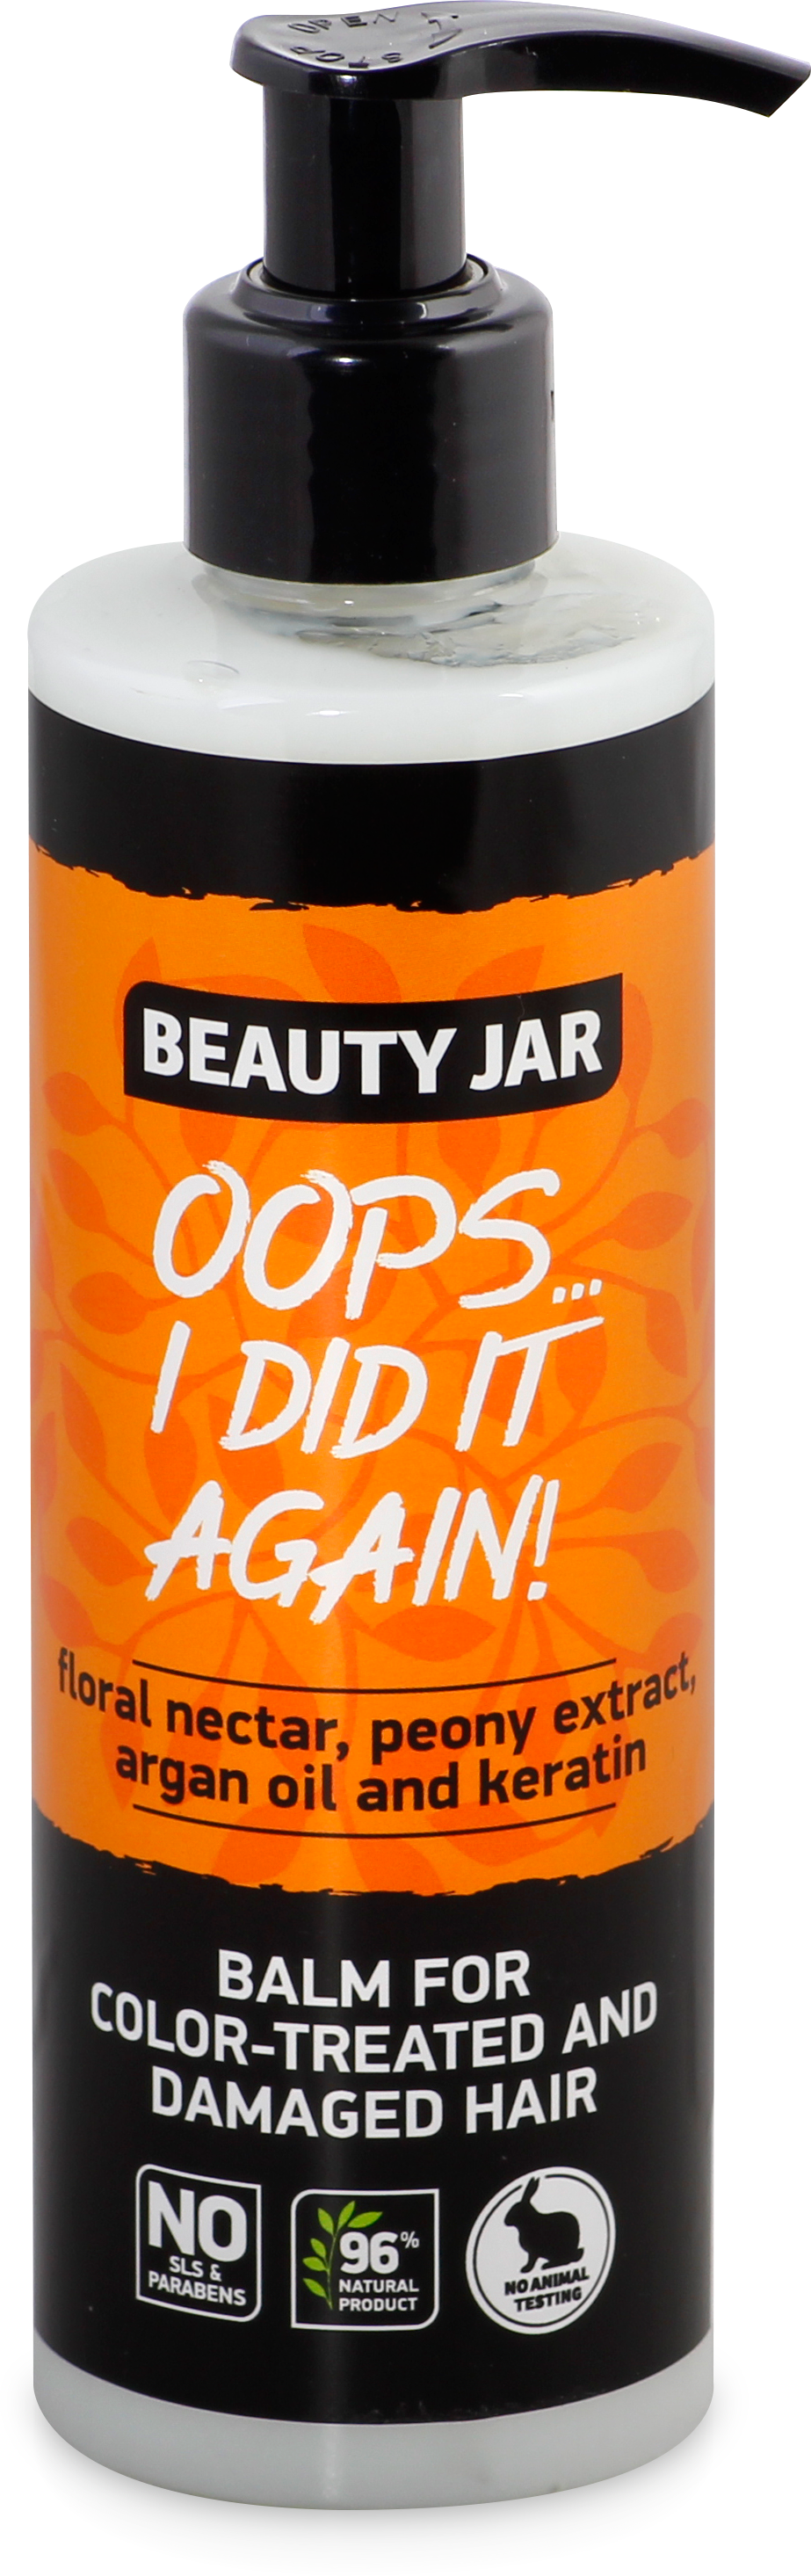 Бальзам для фарбованого та пошкодженого волосся Beauty Jar Oops...i did it again, 250 мл - фото 1